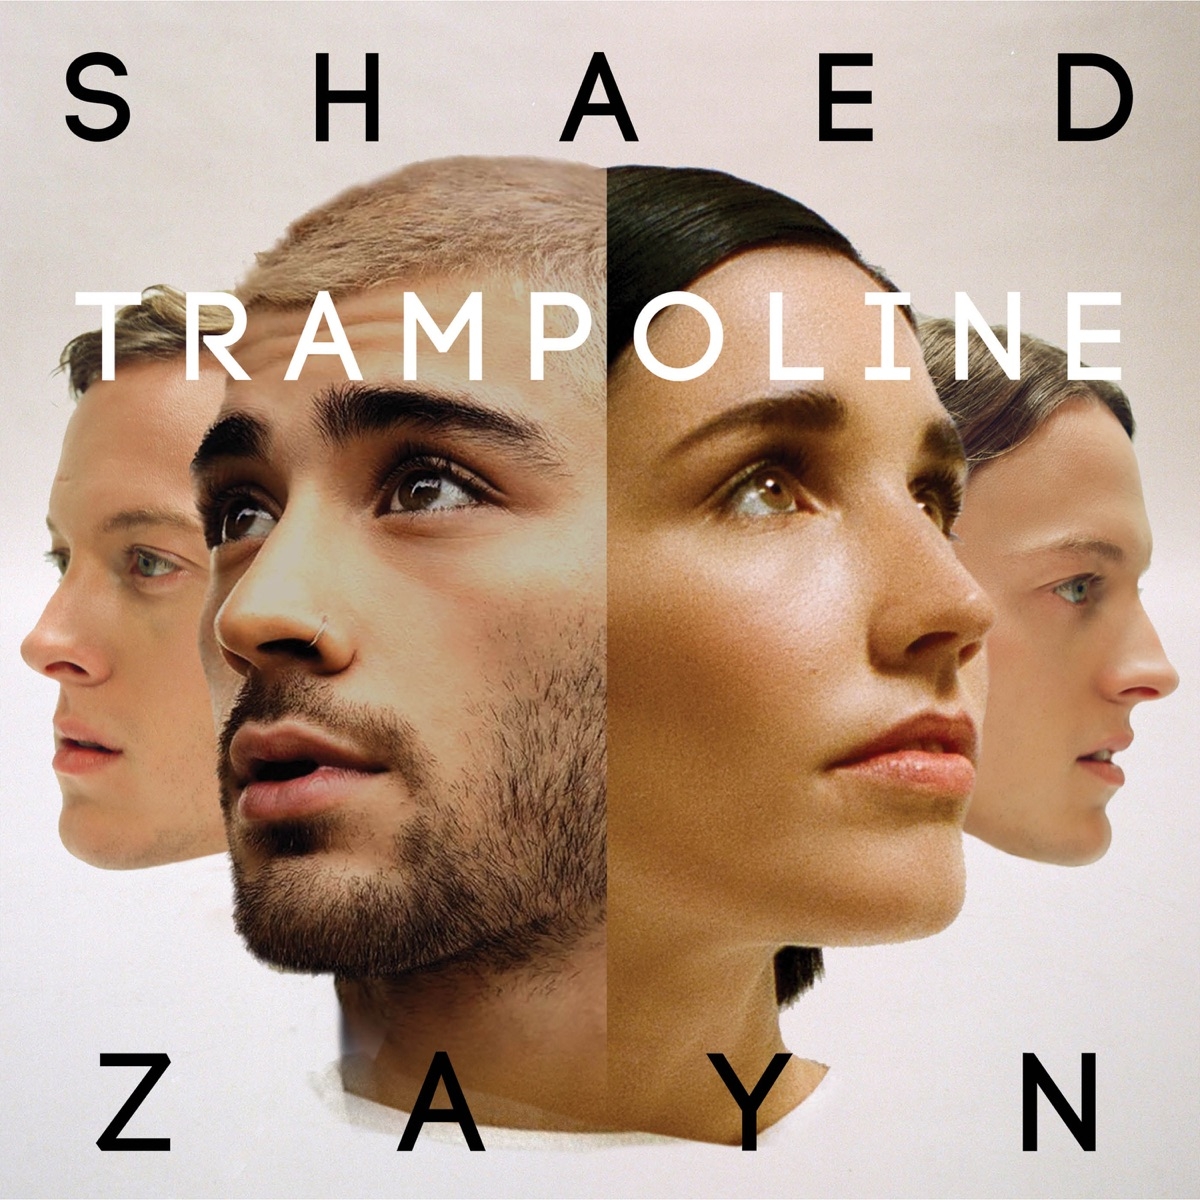 SHAED - Trampoline